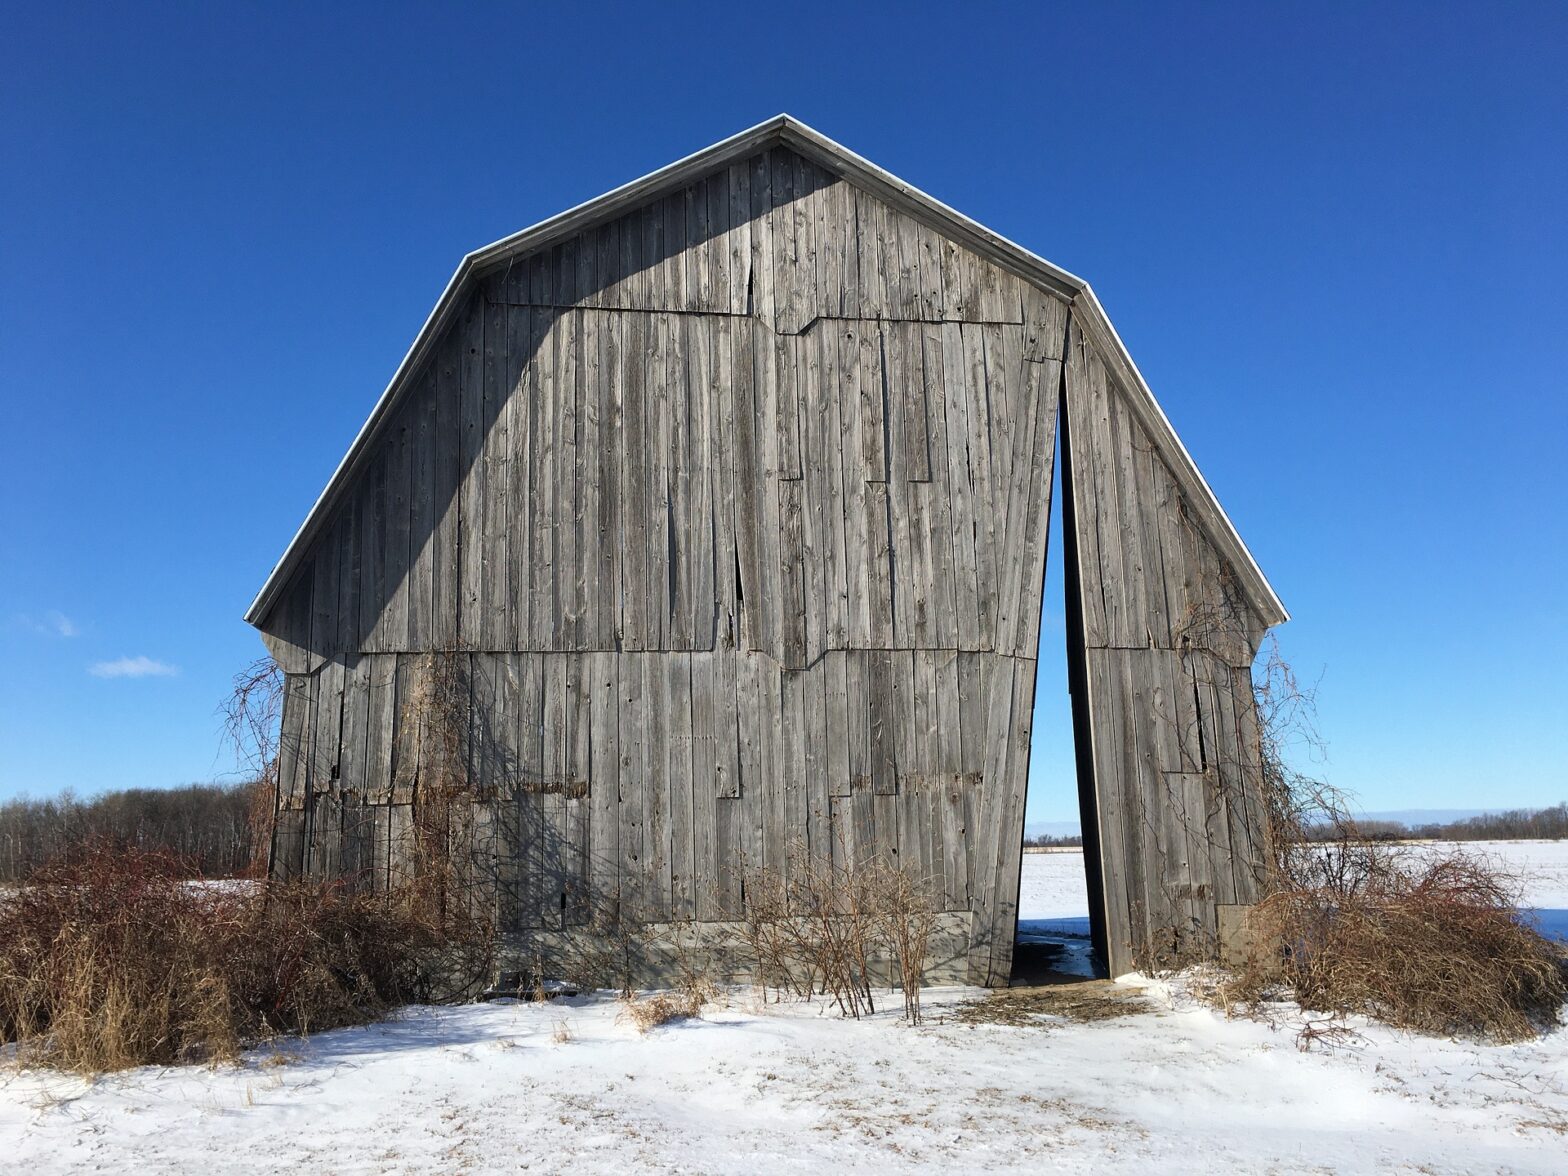 Old barn missing slats in a snowy field